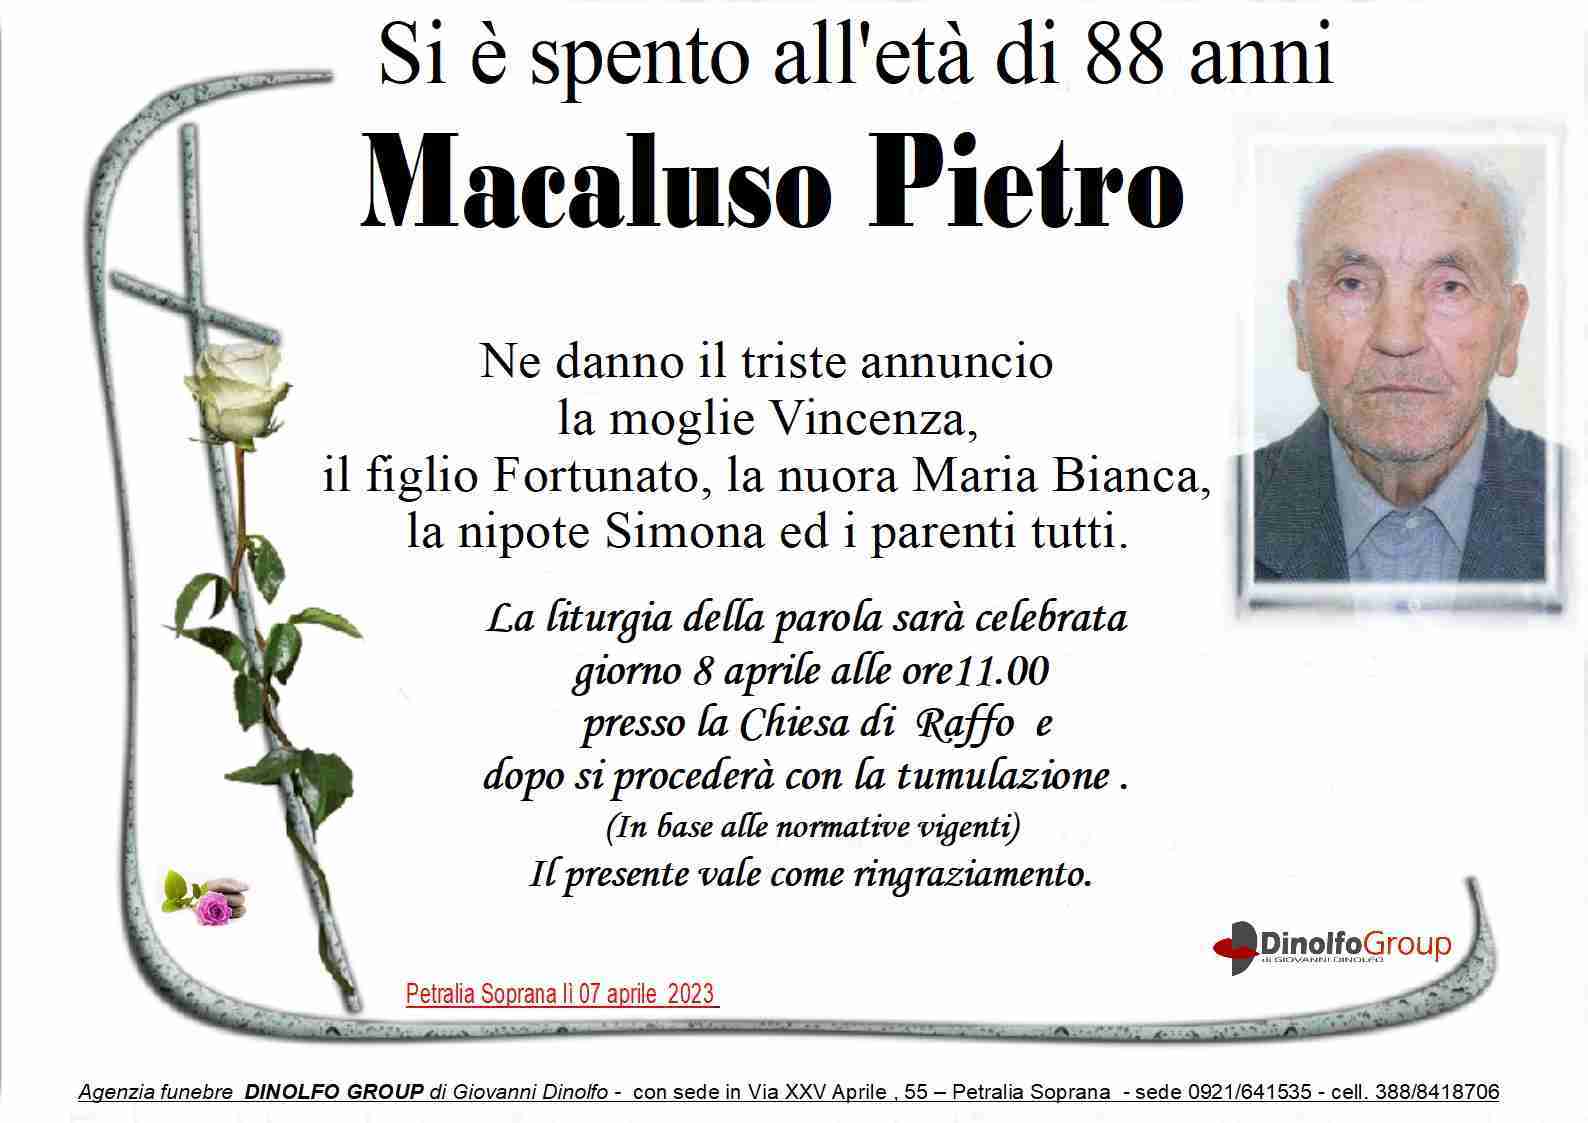 Macaluso Pietro